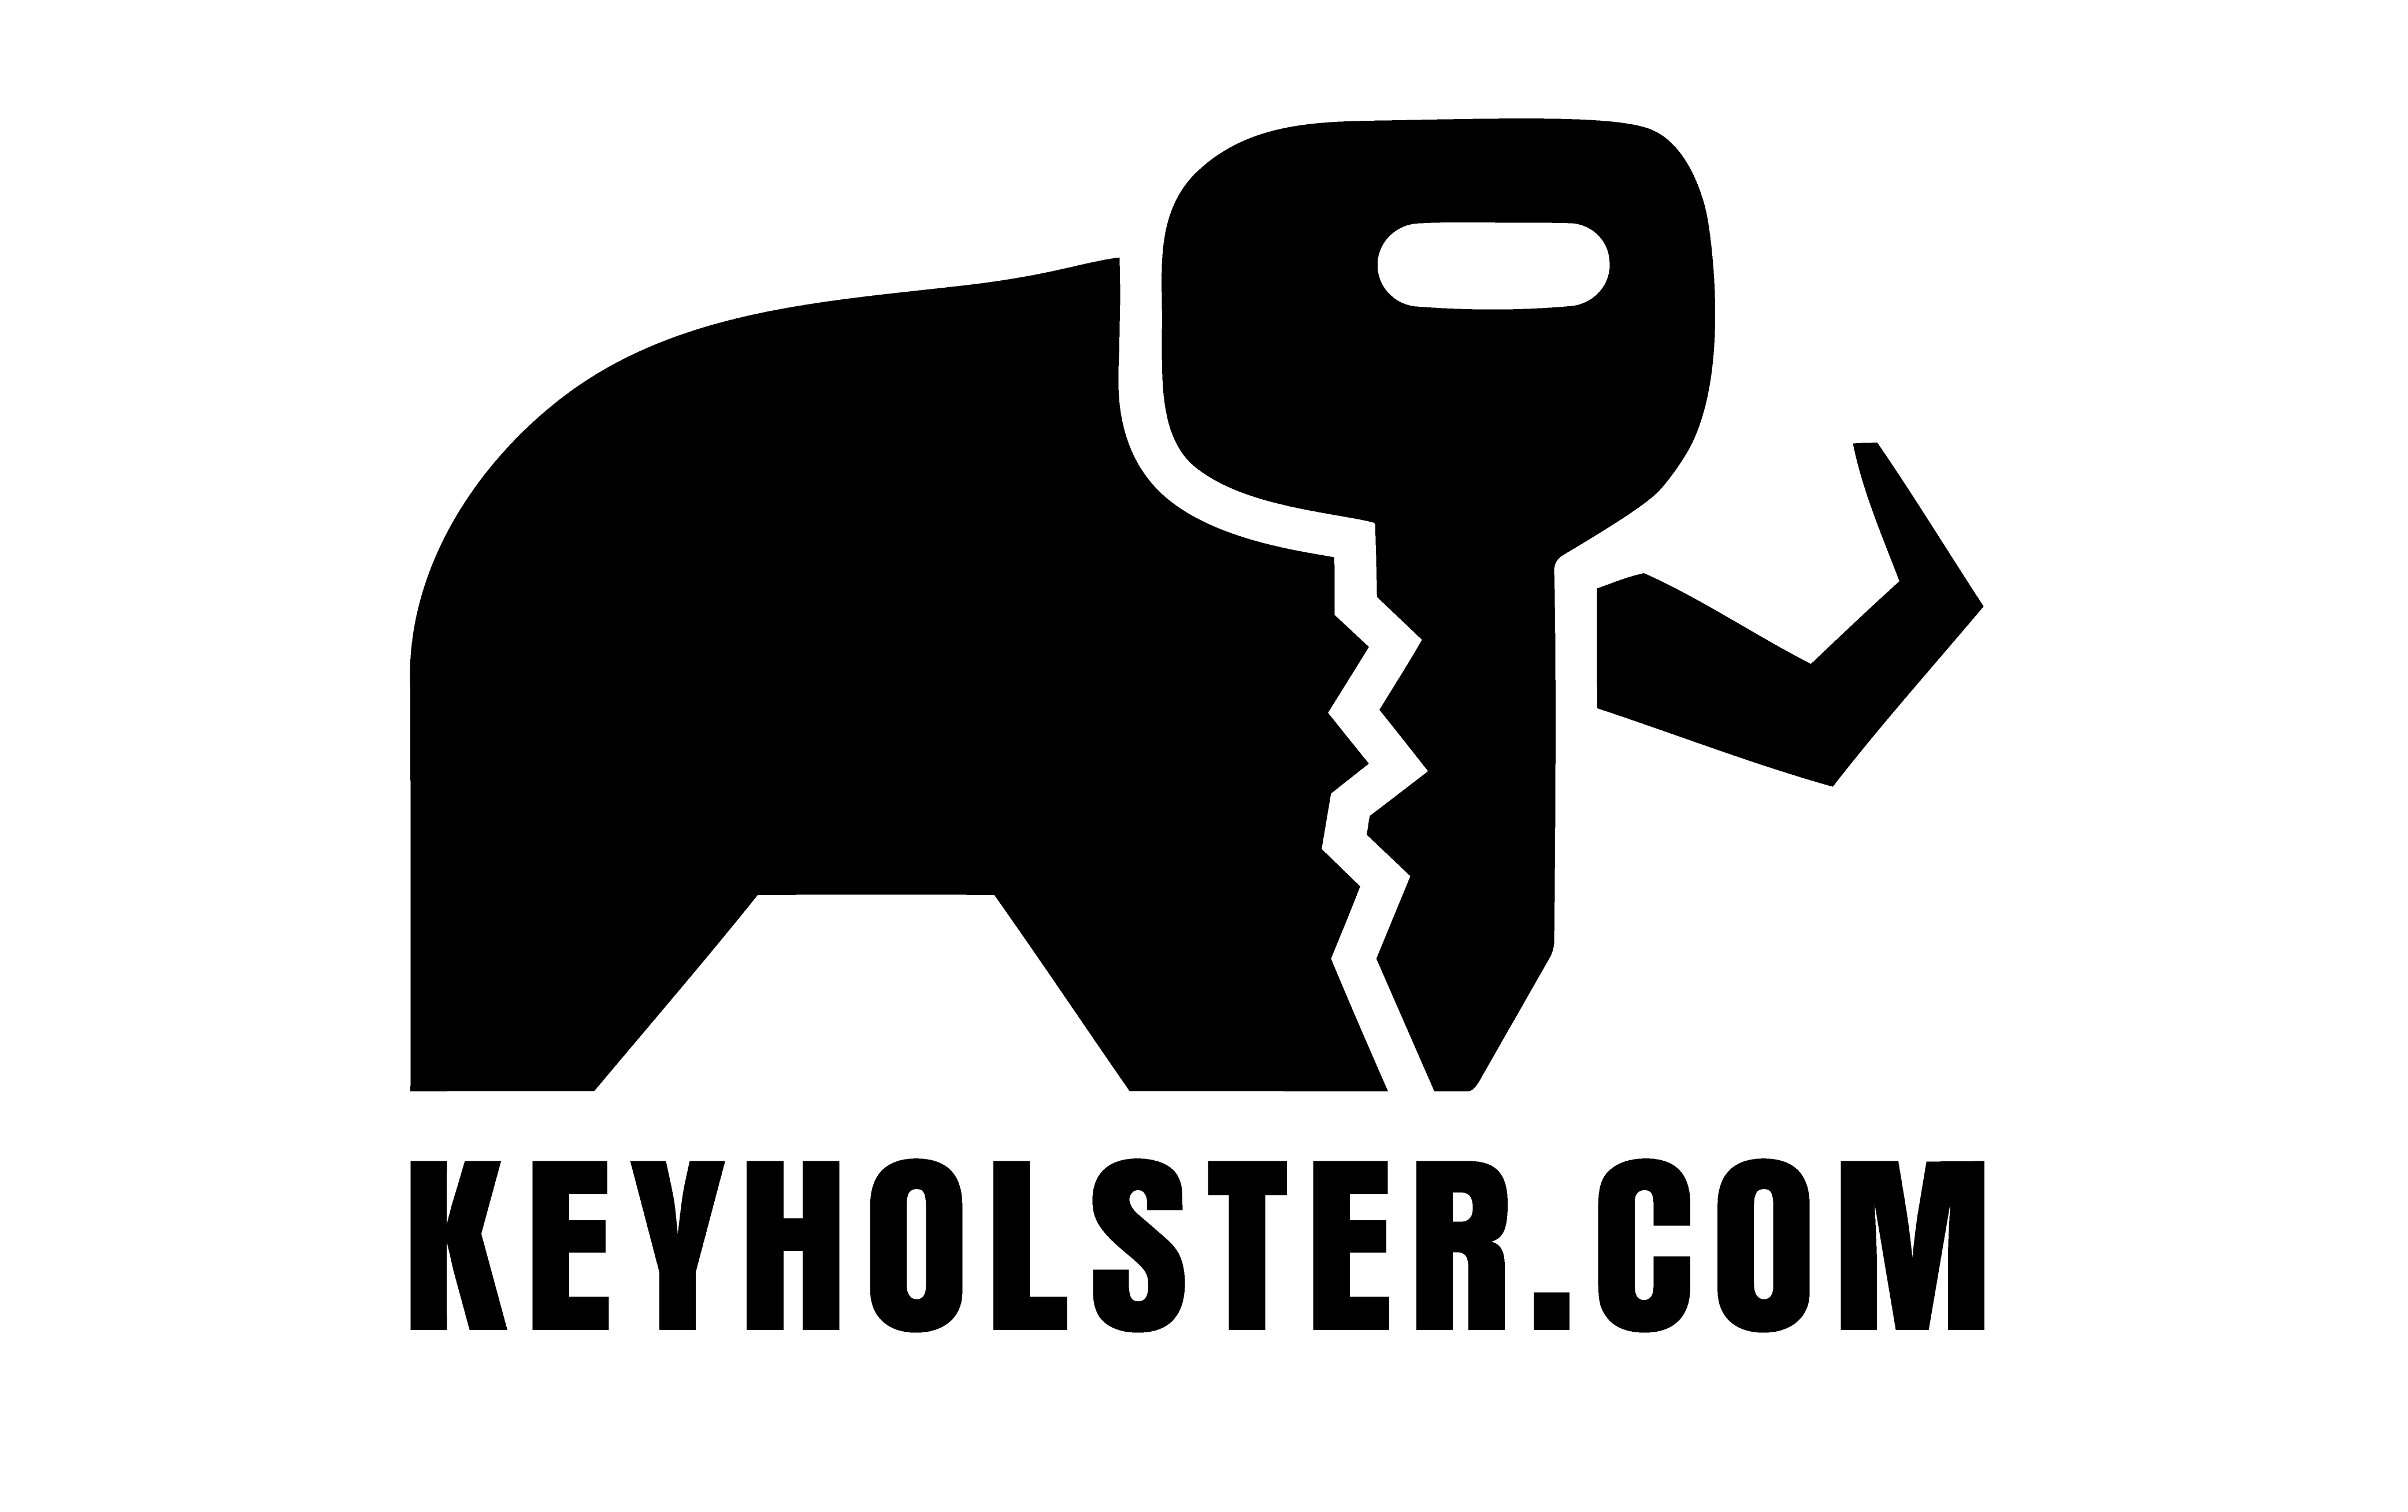 Aluminium, Leder Schlüssel Cover passend für Land Rover Schlüssel HEK,  24,95 €